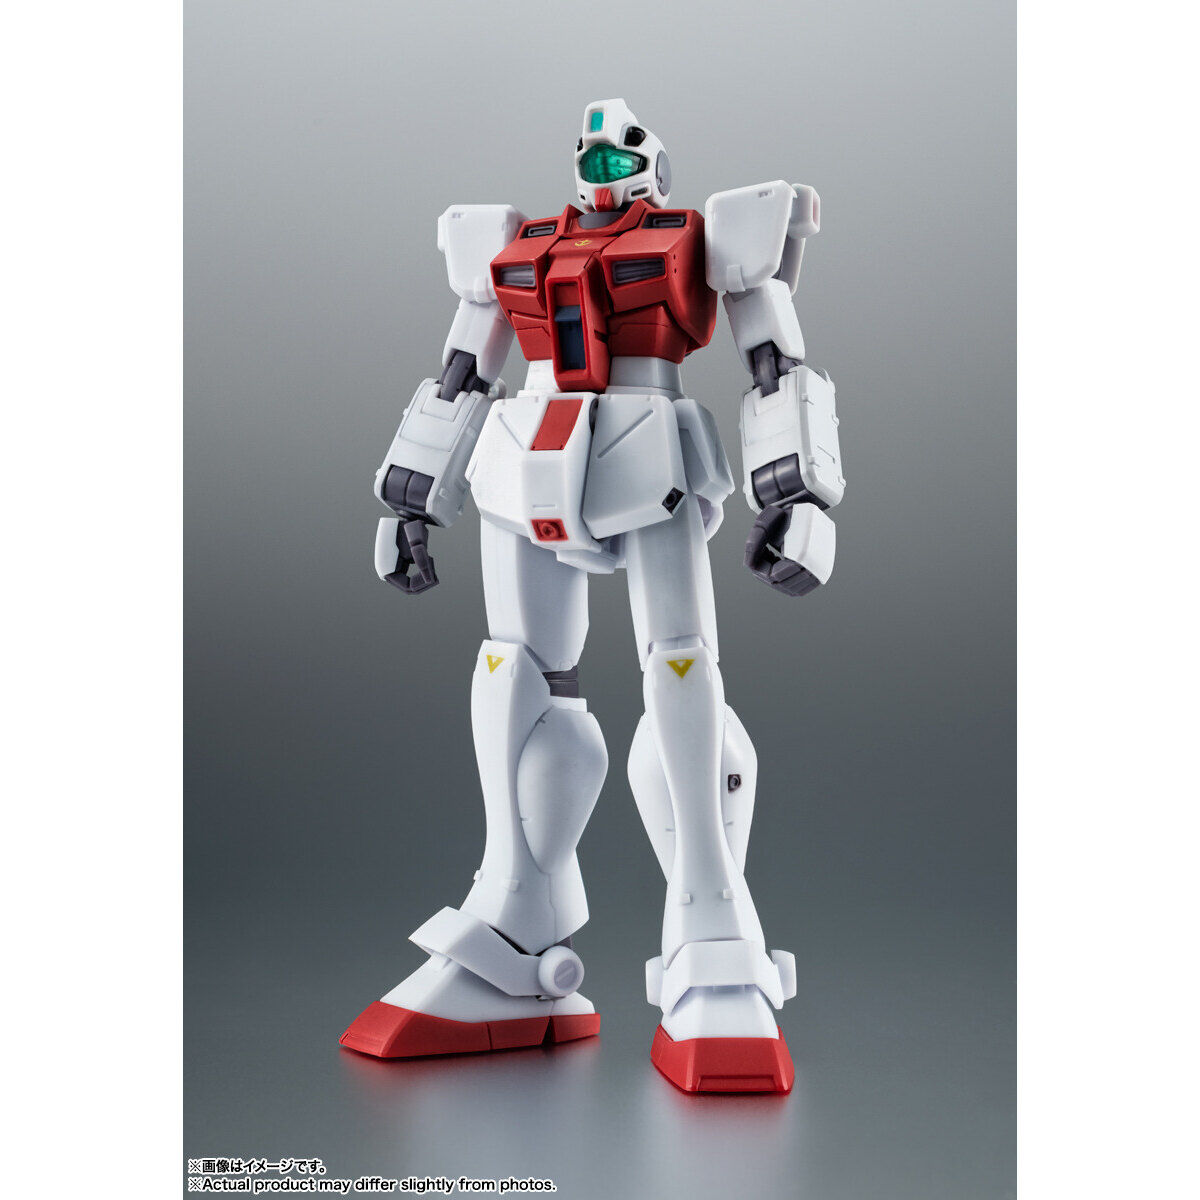 Robot Spirits(Side MS) R-317 RGM-79G Gundam type Mass-production model Command(Guinea Pig Team) ver. A.N.I.M.E.